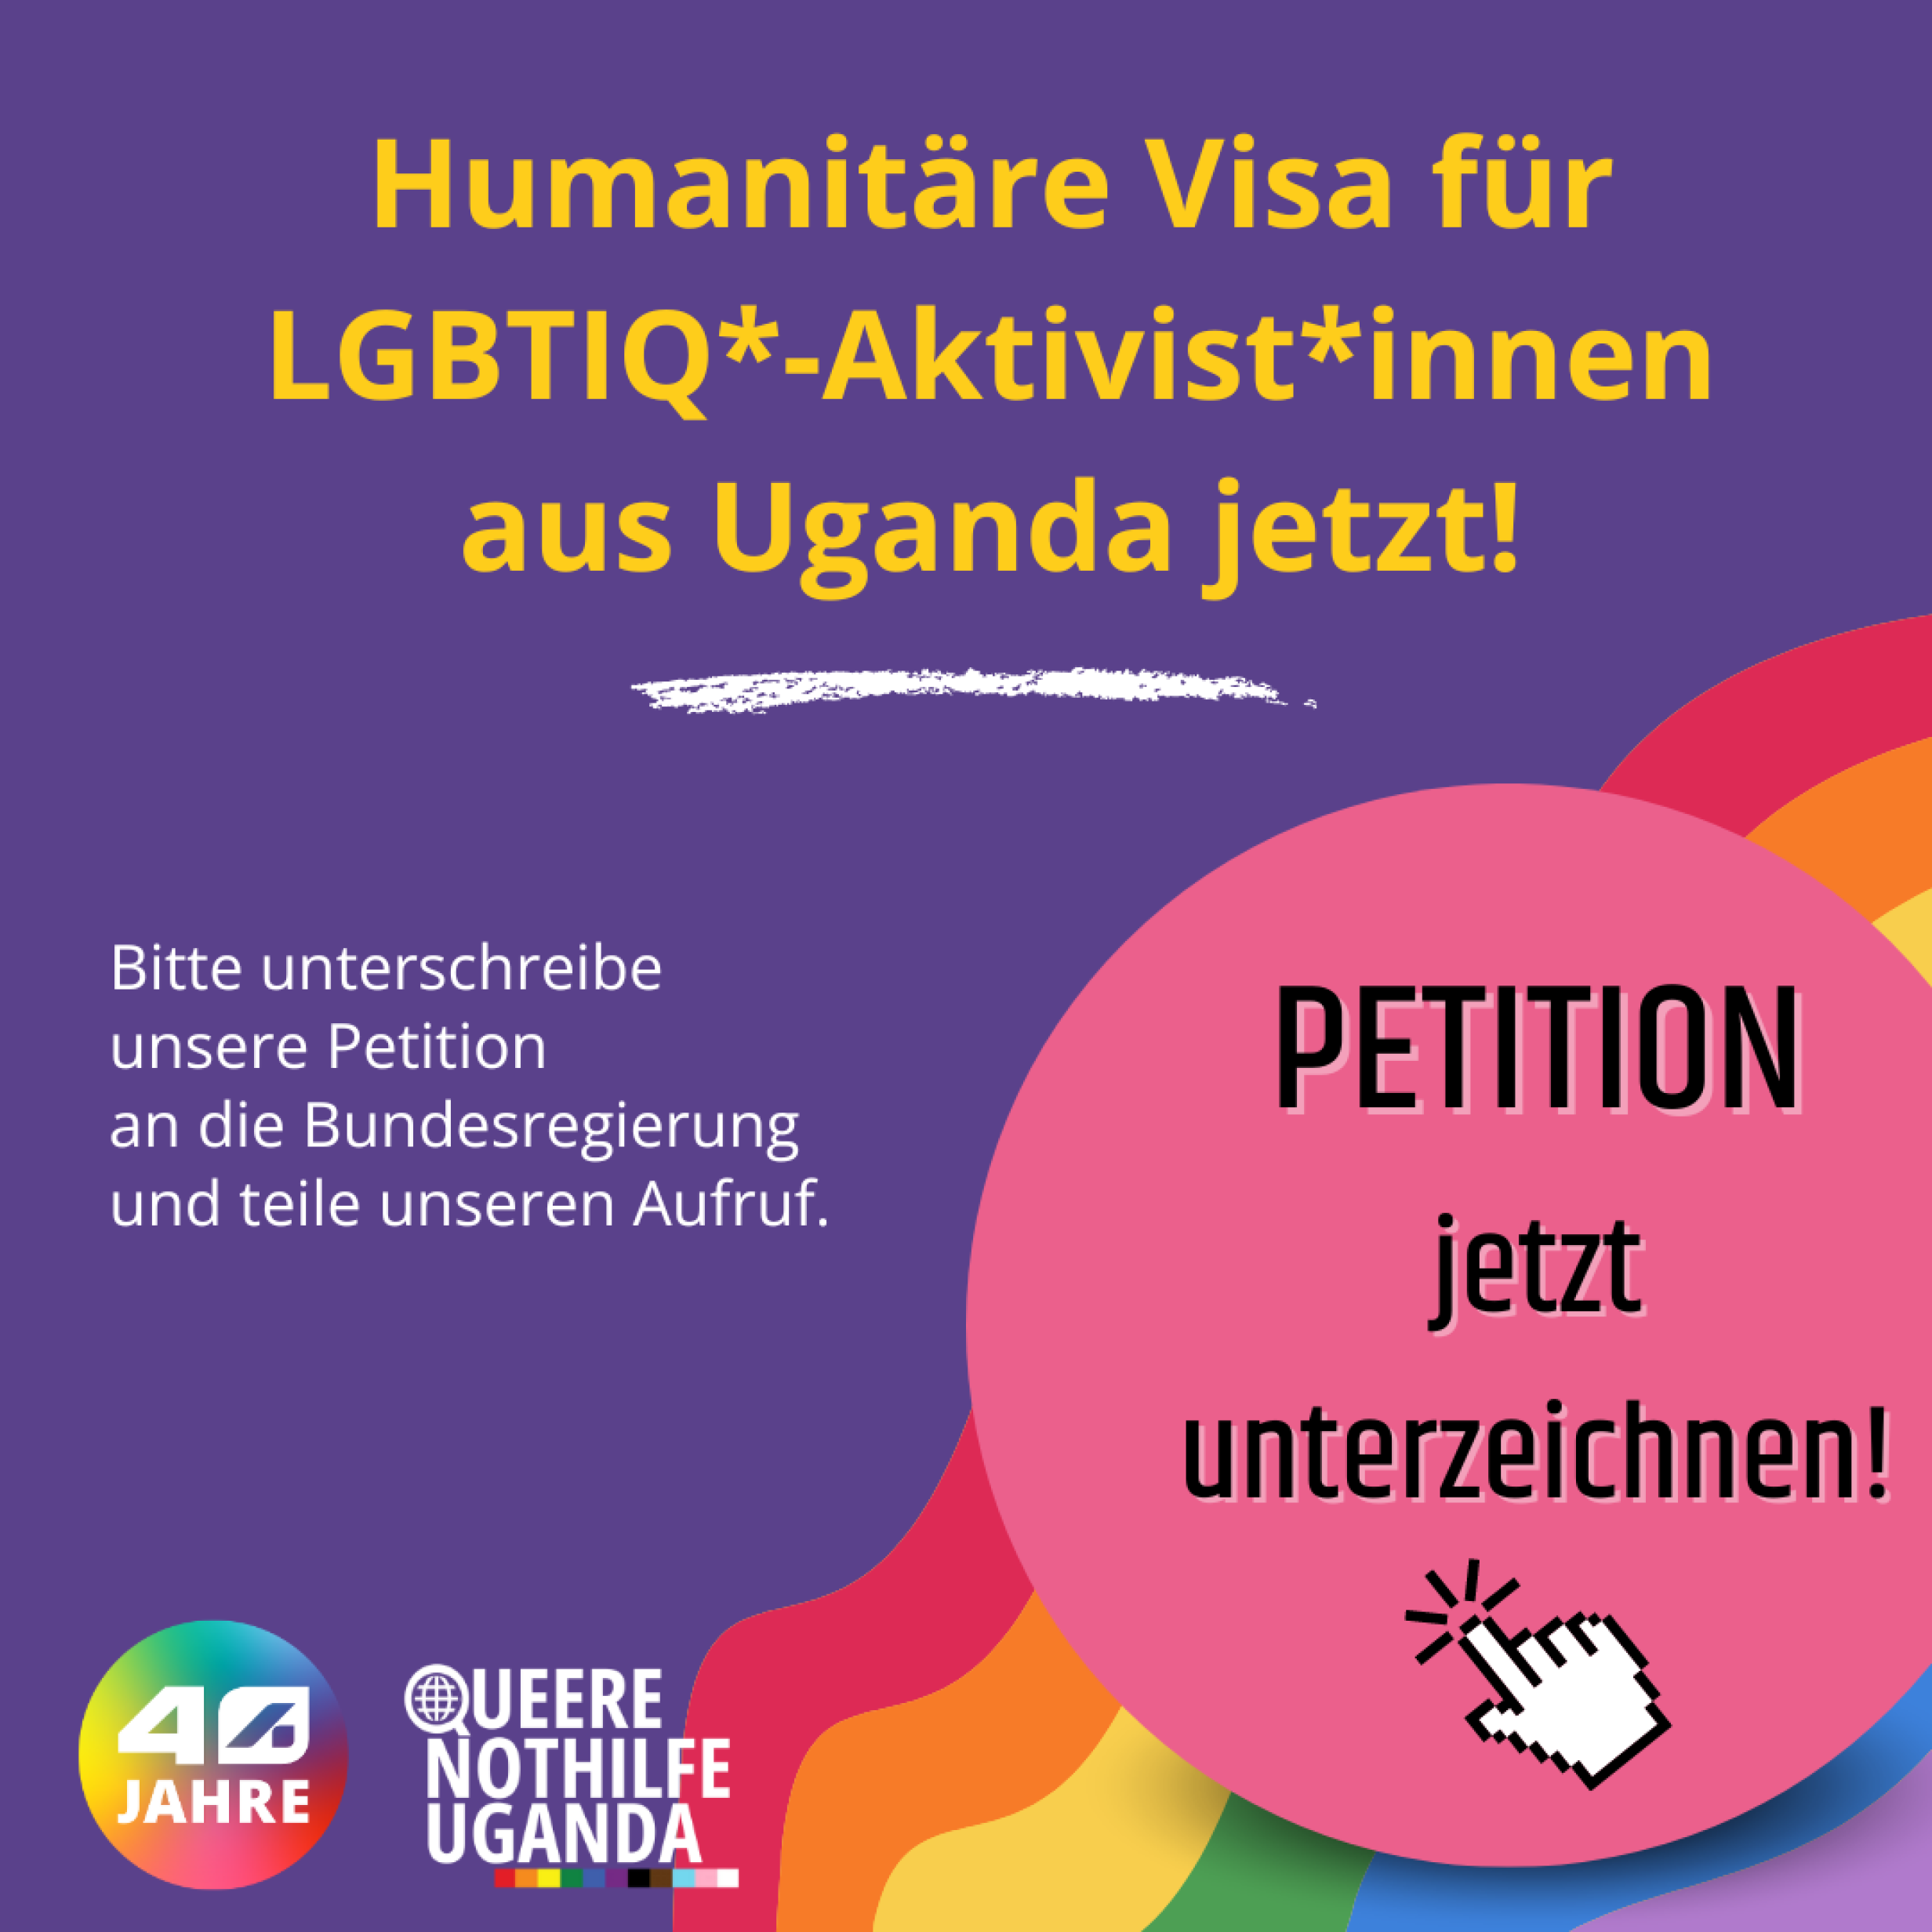 Grafik mit Text: Humanitäre Visa für LGBTIQ*-Aktivist*innen aus Uganda jetzt! Bitte unterschreibe  unsere Petition  an die Bundesregierung  und teile unseren Aufruf. Petition jetzt unterzeichnen! 